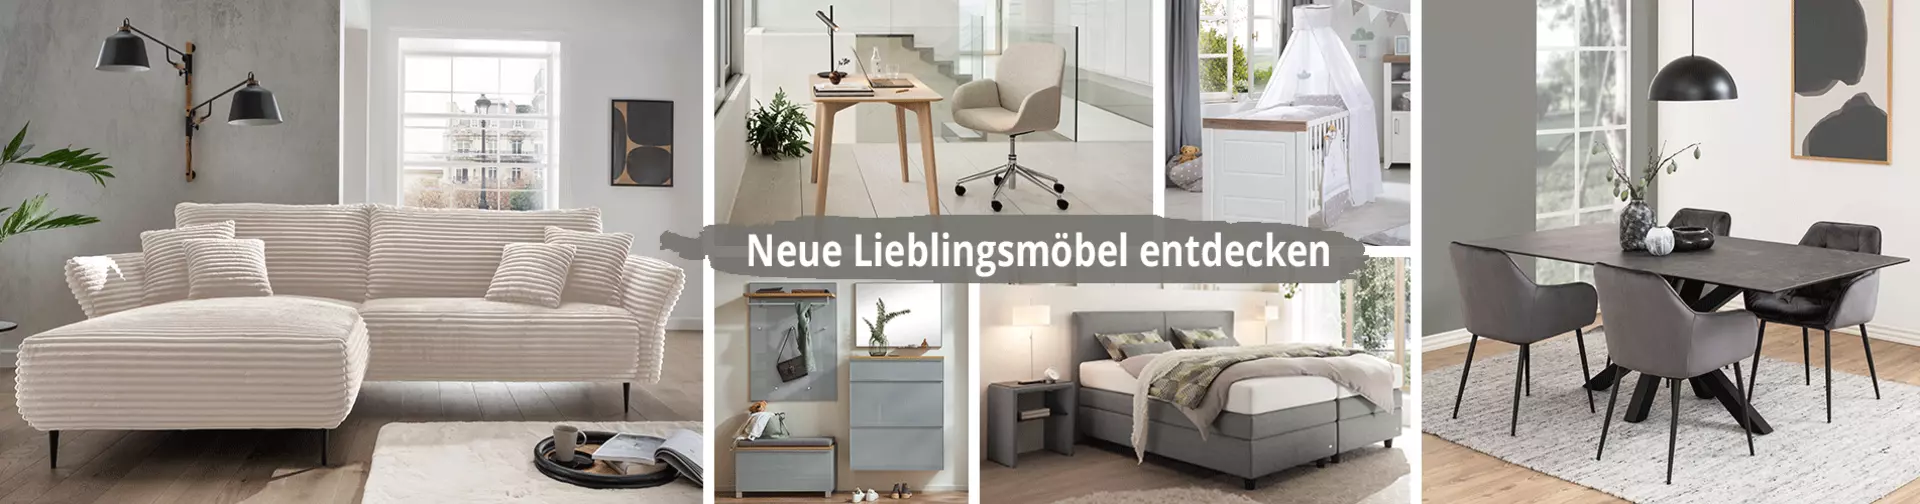 Jetzt bei Möbel Inhofer online neue Lieblingsmöbel entdecken - hier gehts zu den Möbeln